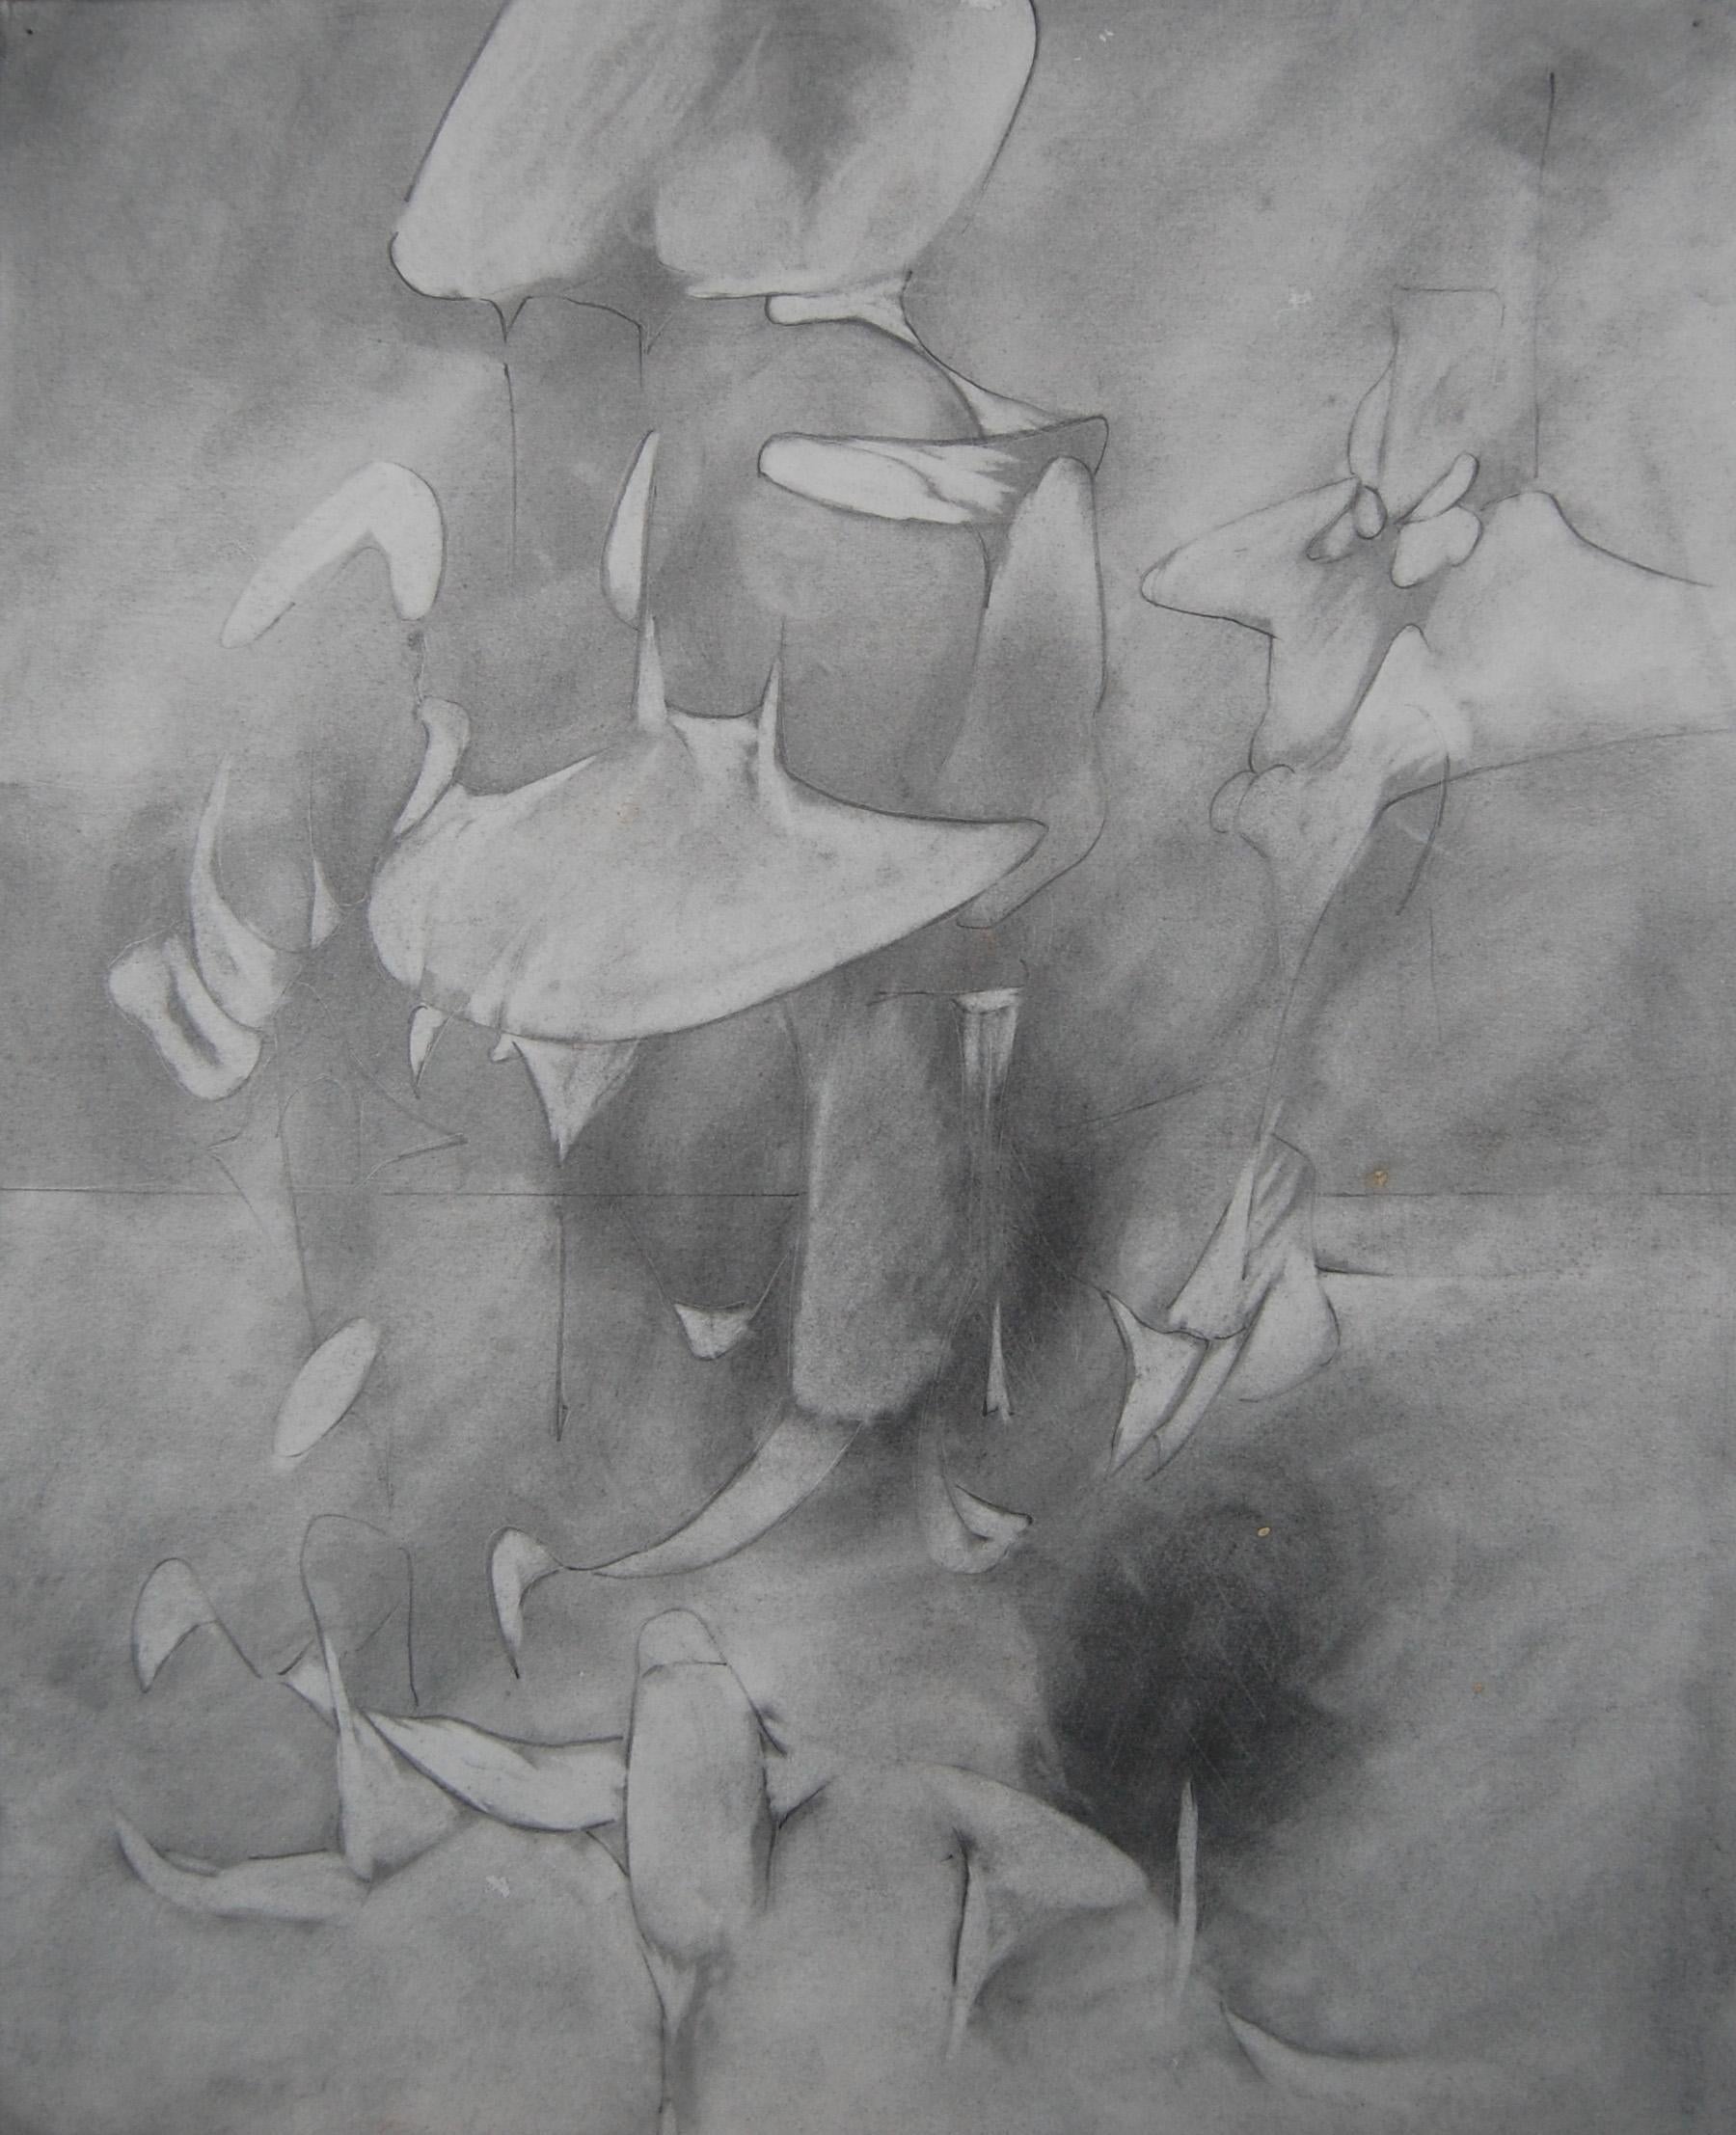 Abstract Drawing Daniel Ketelhut - Dessin abstrait, ""Étude au graphite pour le lâcher prise"".